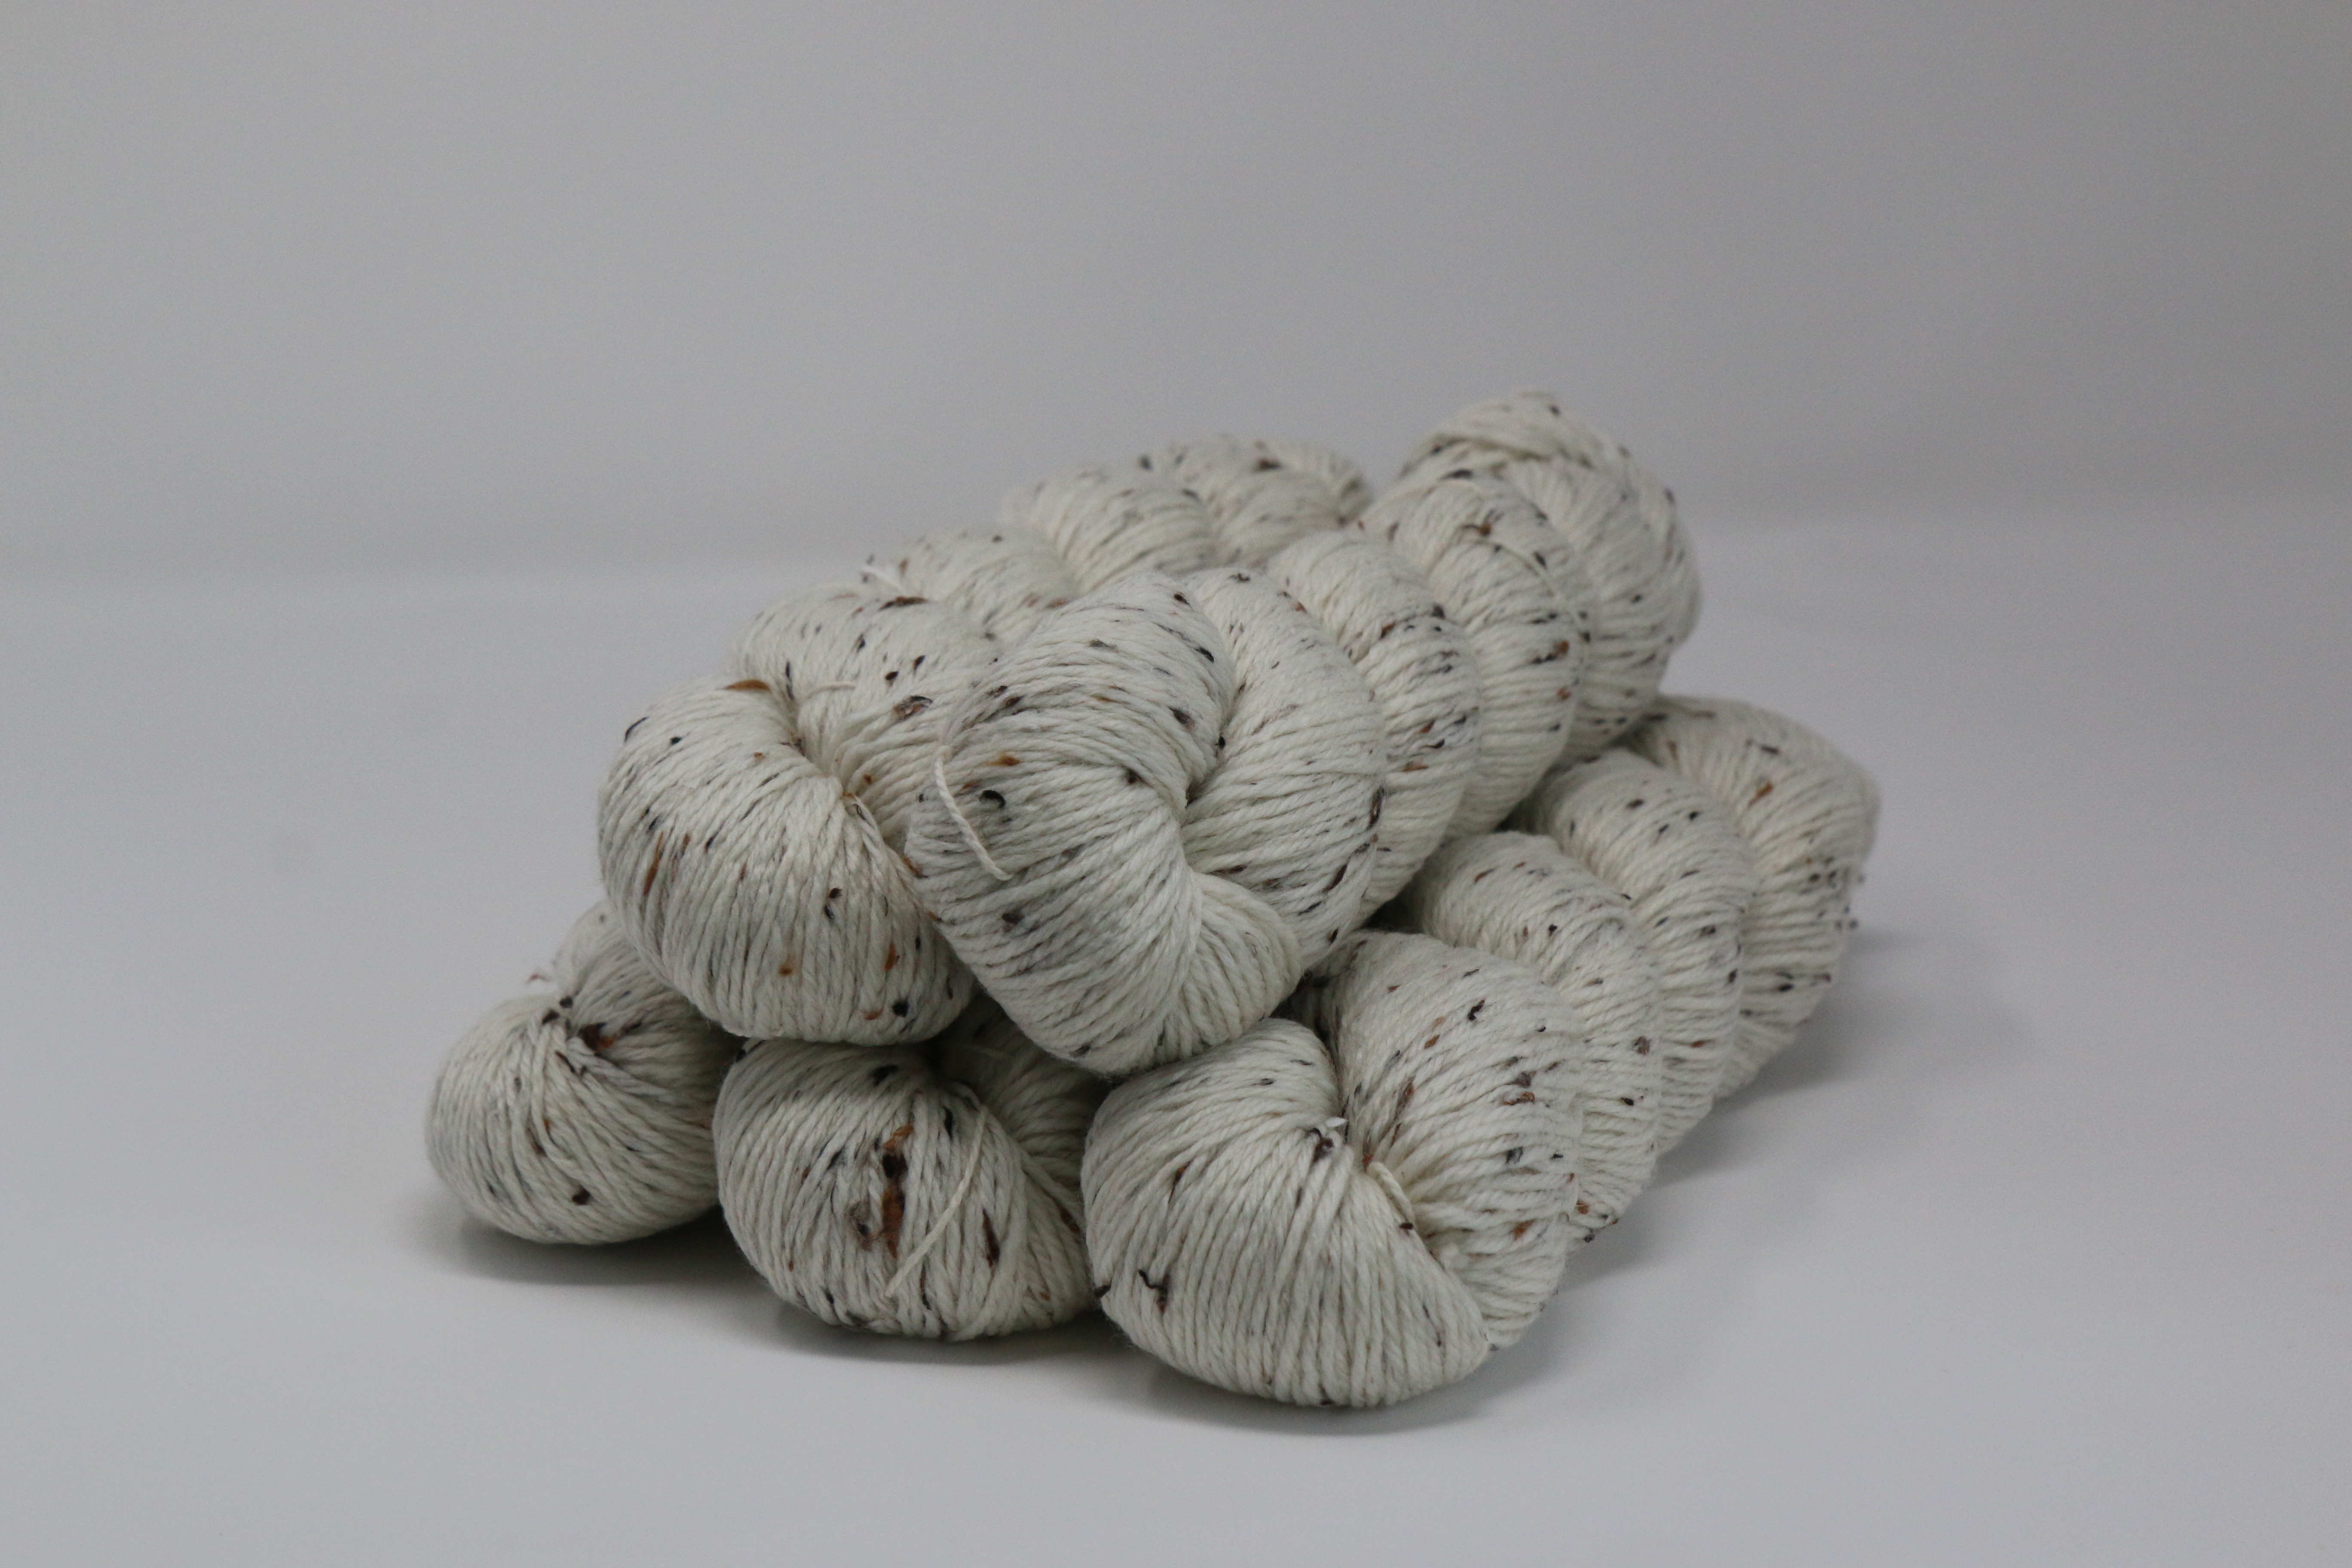 Siesta Superwash Merino Wool Cashmere Nylon Yarn